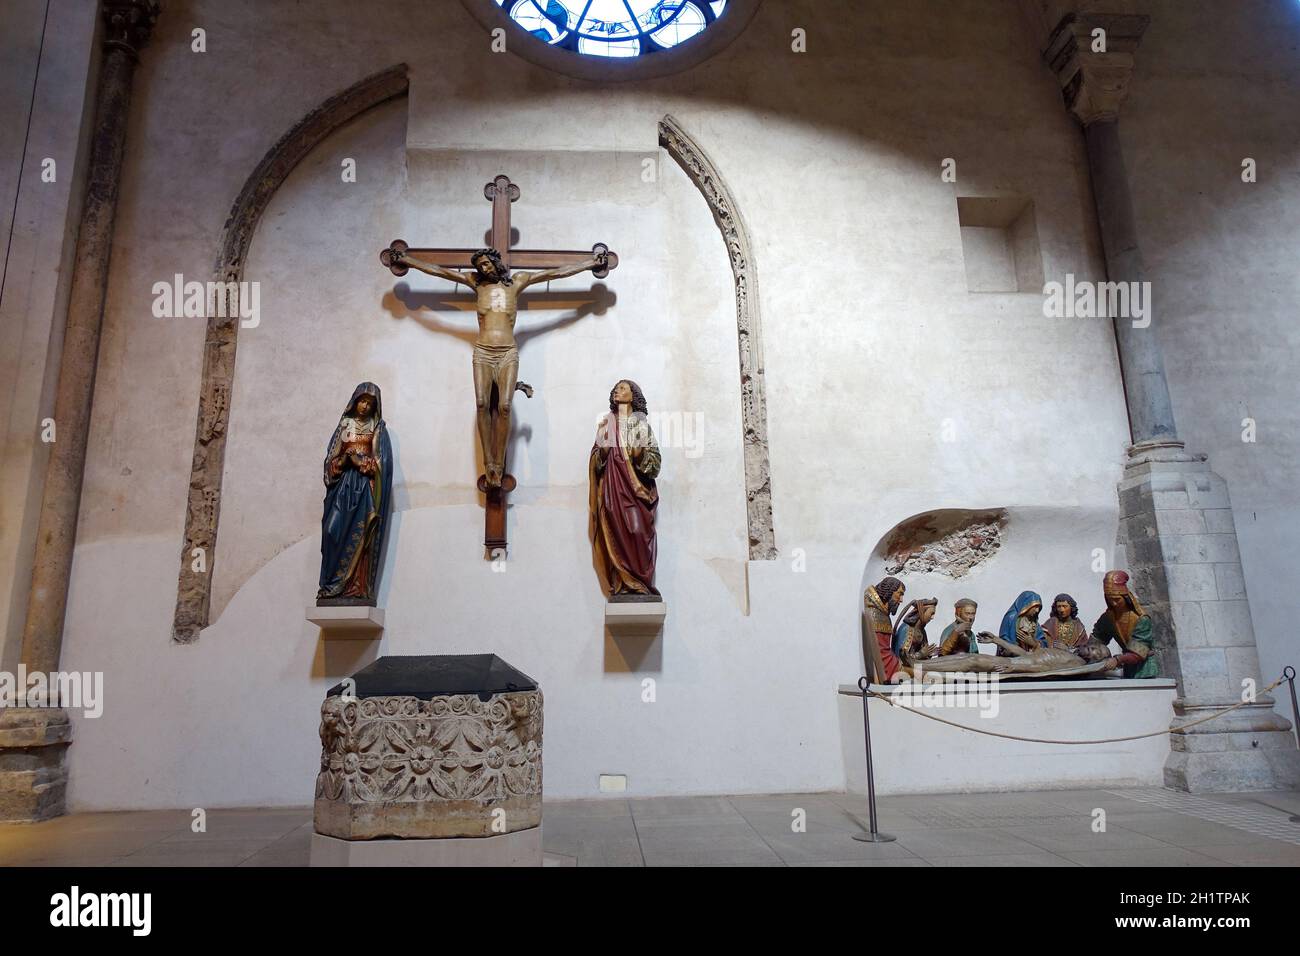 Kreuzigungsgruppe in Gross St. Martin, romanische Basilika aus dem 12. Jahrhundert, Köln,  Nordrhein-Westfalen, Deutschland Stock Photo